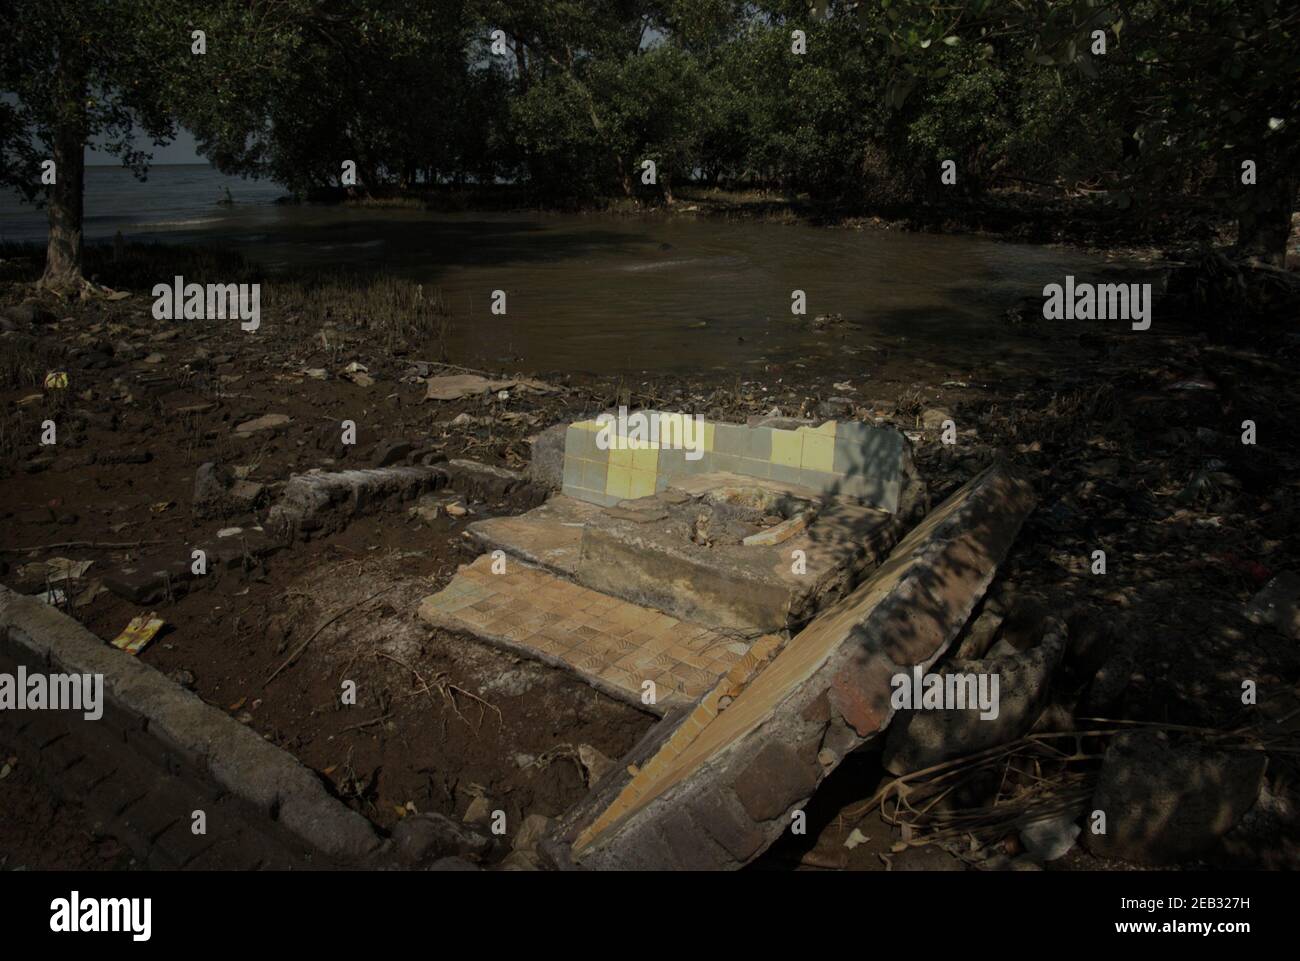 Structure fabriquée par l'homme détruite par l'abrasion côtière, située au milieu de la mangrove de Kapuk Angke, près du village de Kamal Muara, dans la zone côtière de Jakarta, en Indonésie. Banque D'Images